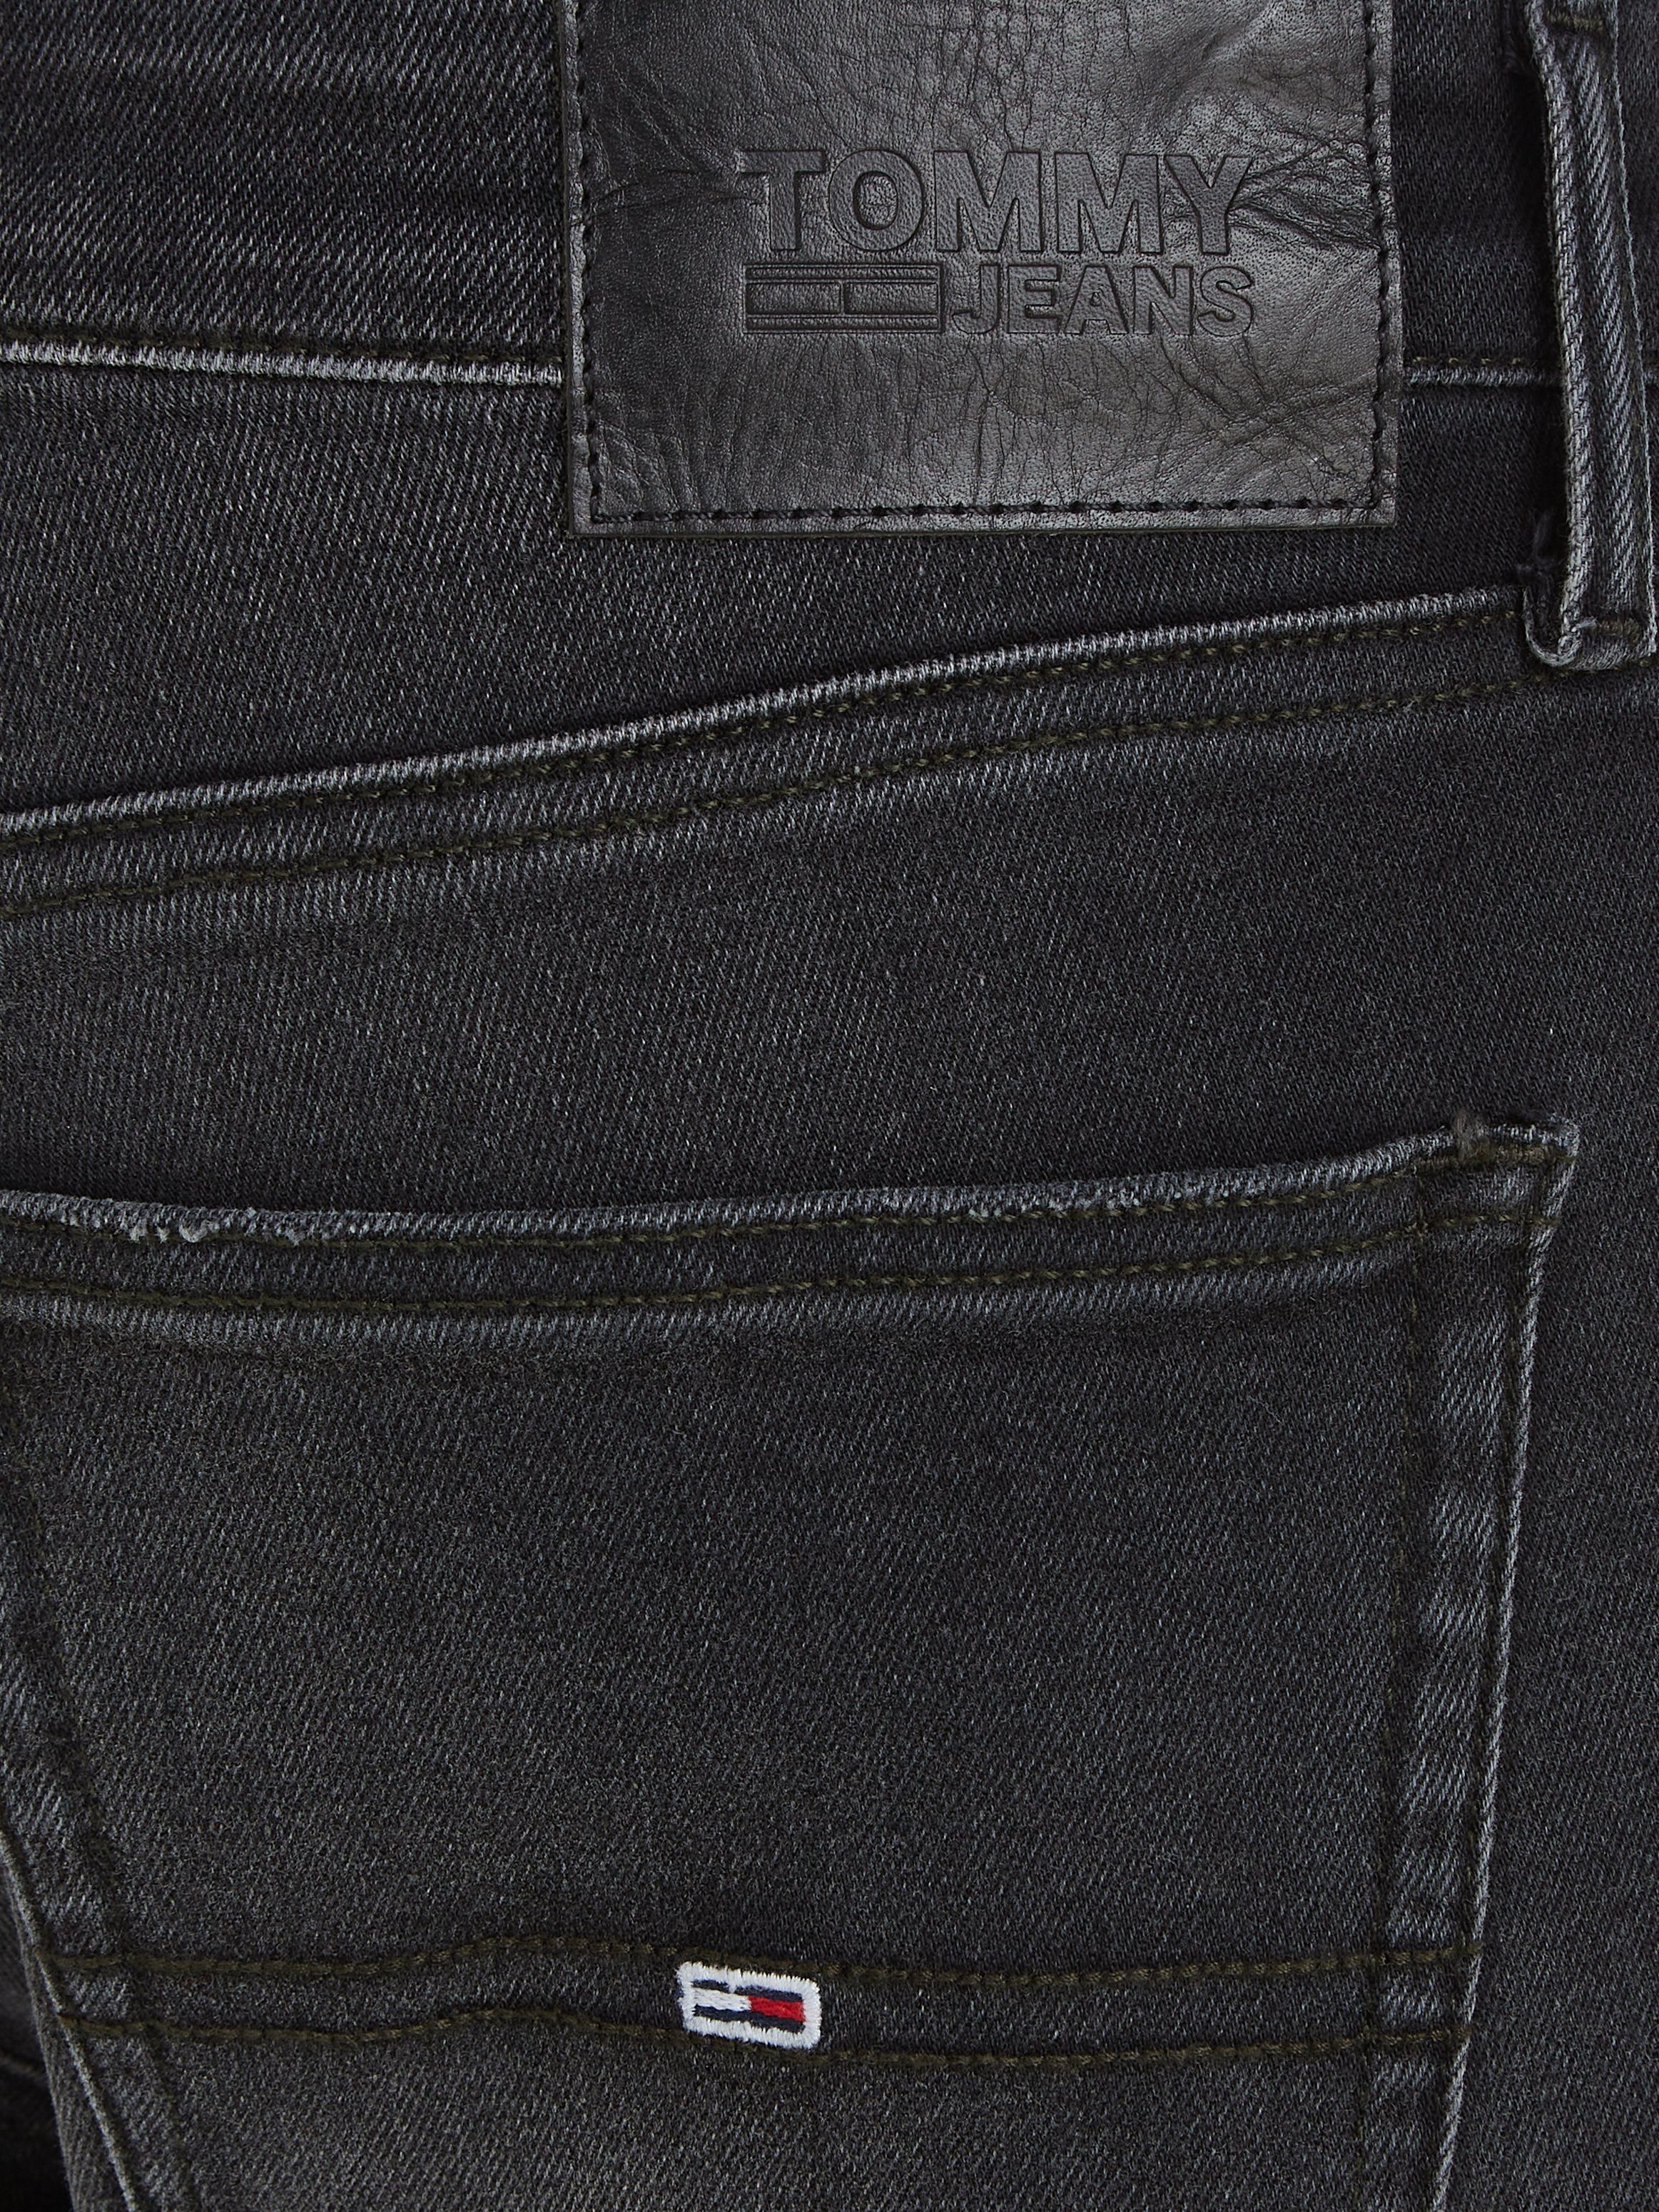 SCANTON Tommy Jeans SLIM Denim Black 5-Pocket-Jeans